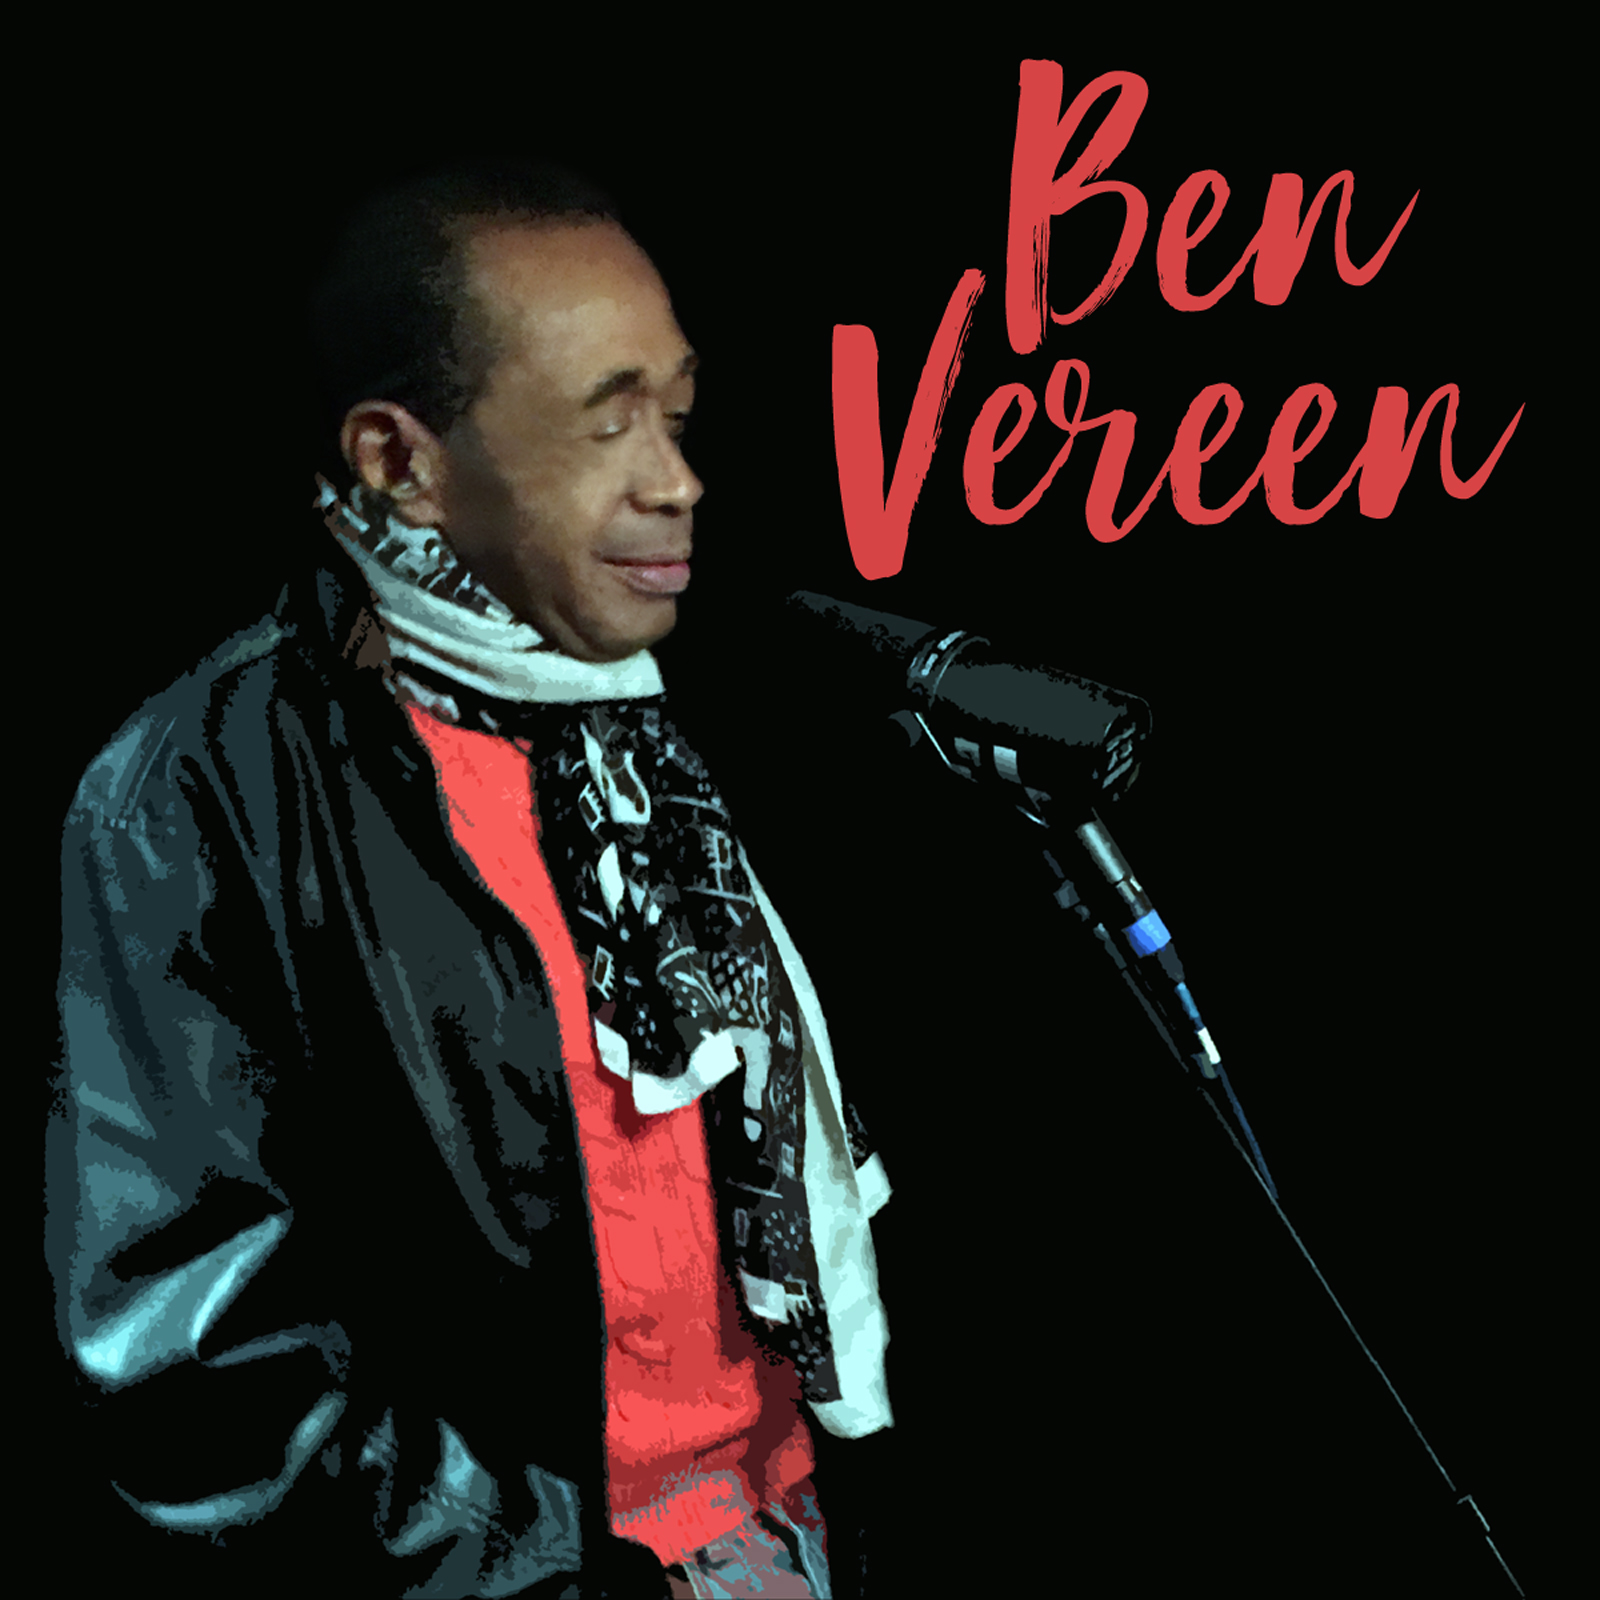 Ben Vereen releases new single